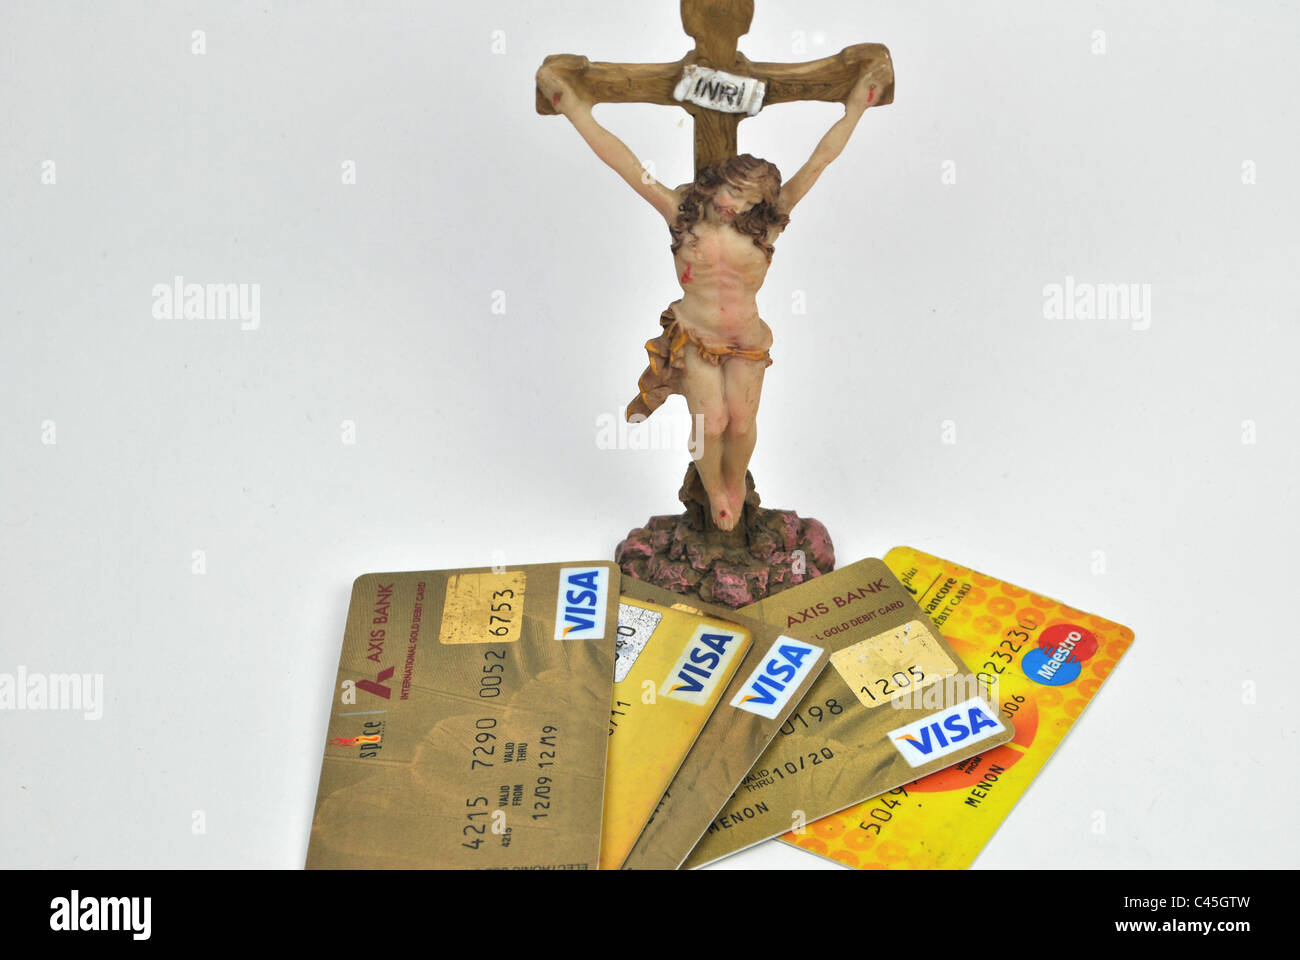 Cartes de crédit dispersés autour d'une sculpture de Jésus Christ Dieu Jésus croix crucifix rip IESVS NAZARENVS REX IVDAEORVM INRI Banque D'Images